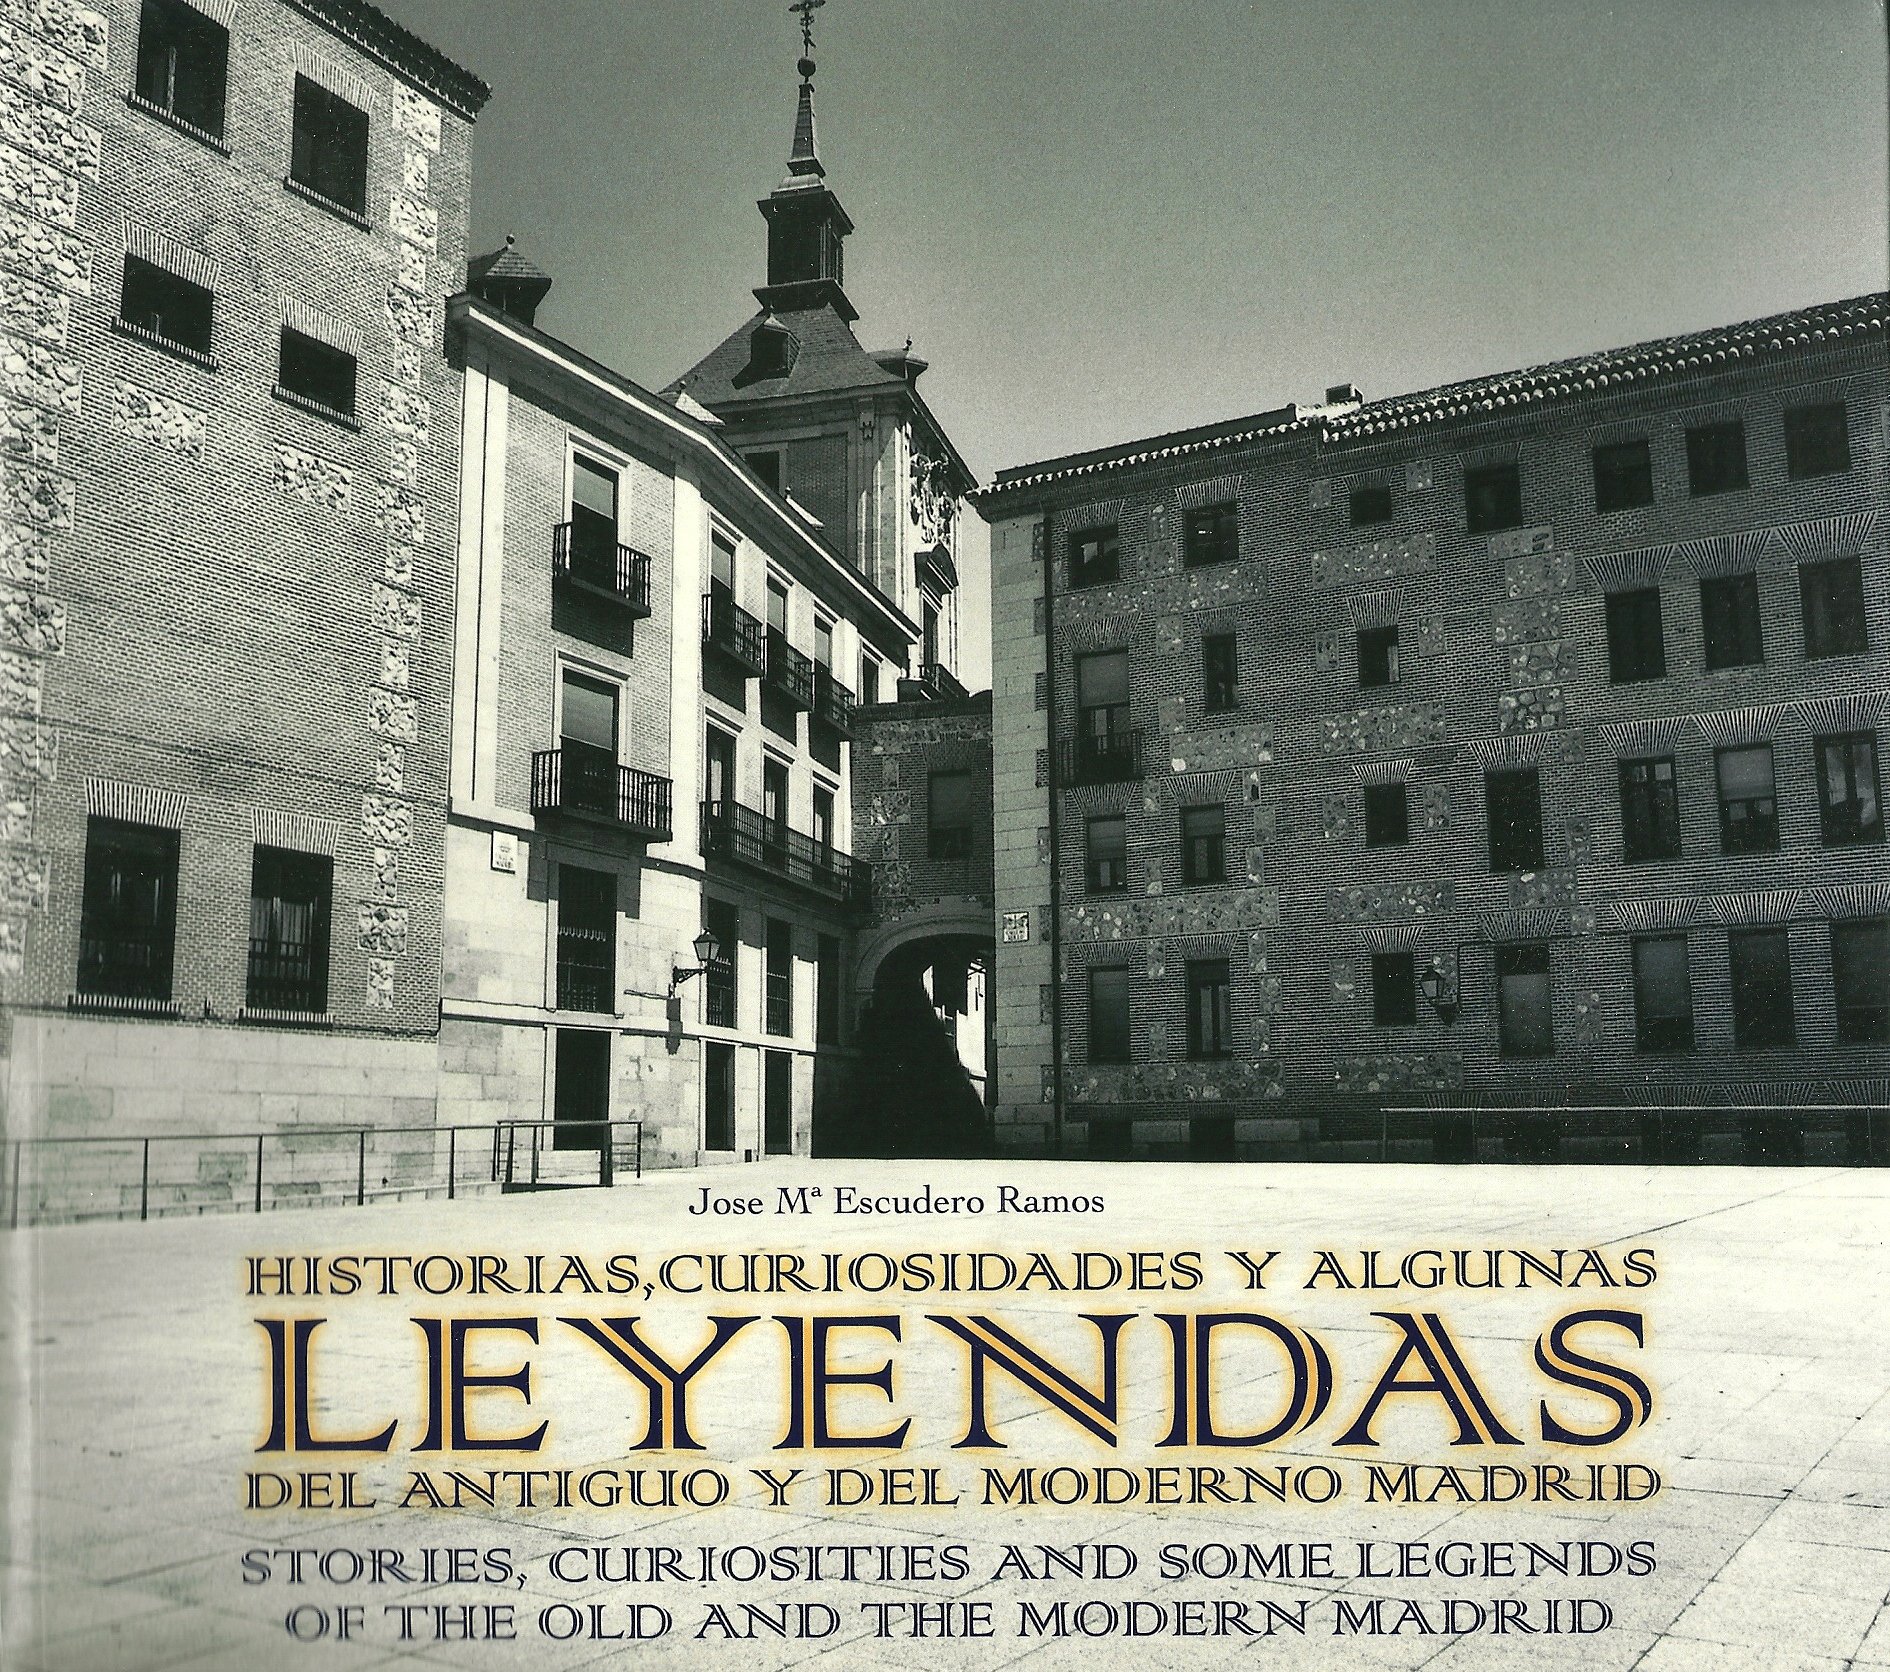 Recomendamos: Historias, curiosidades y leyendas del antiguo y del moderno Madrid